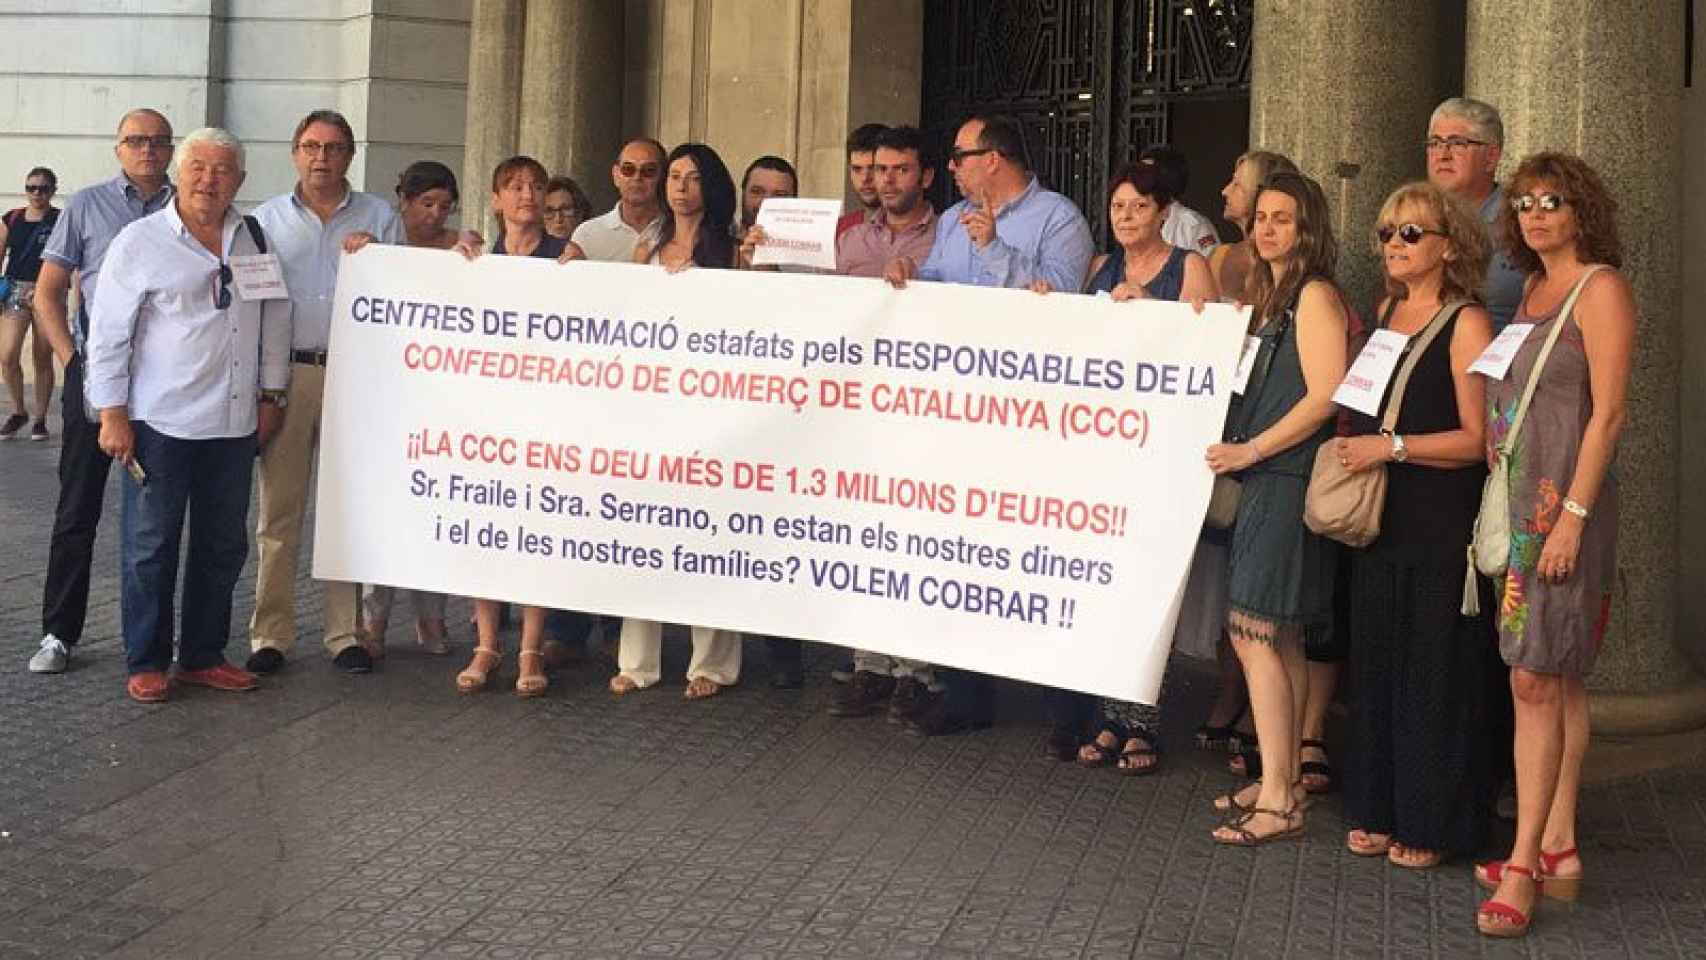 Propietarios de medio centenar de escuelas de formación protestan contra las deudas acumuladas de la Confederación de Comercio de Cataluña.